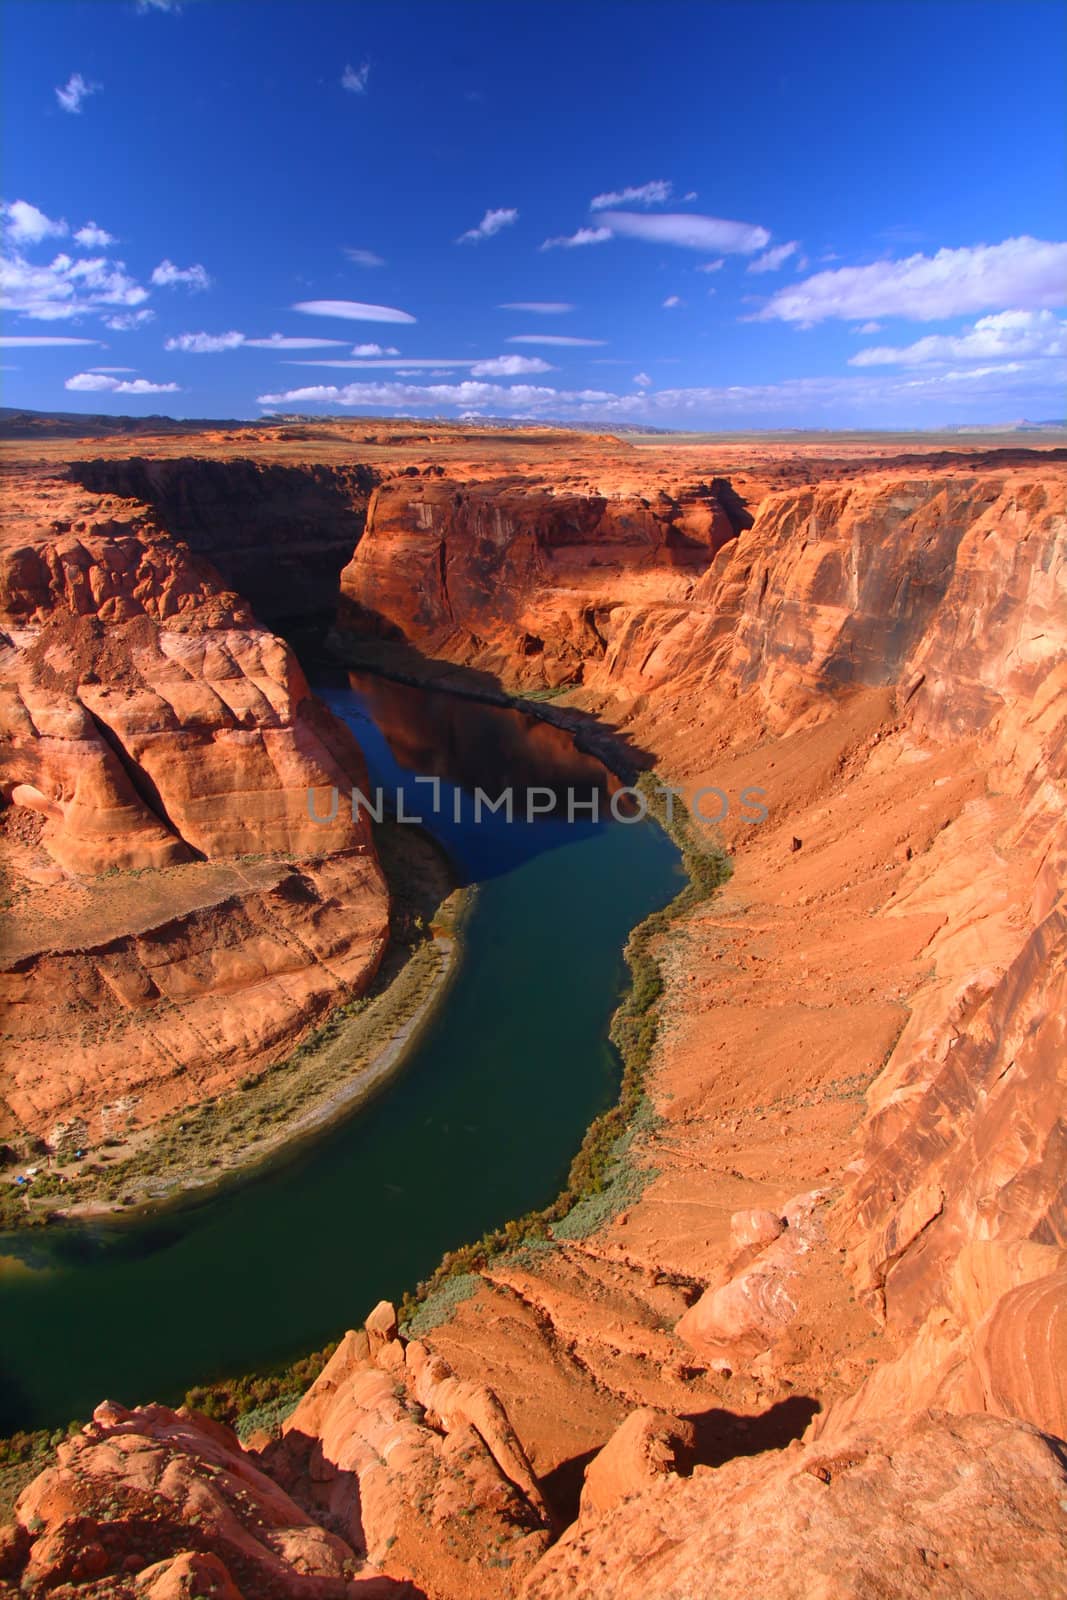 Colorado River cuts a deep canyon through the rocky lands of Arizona.